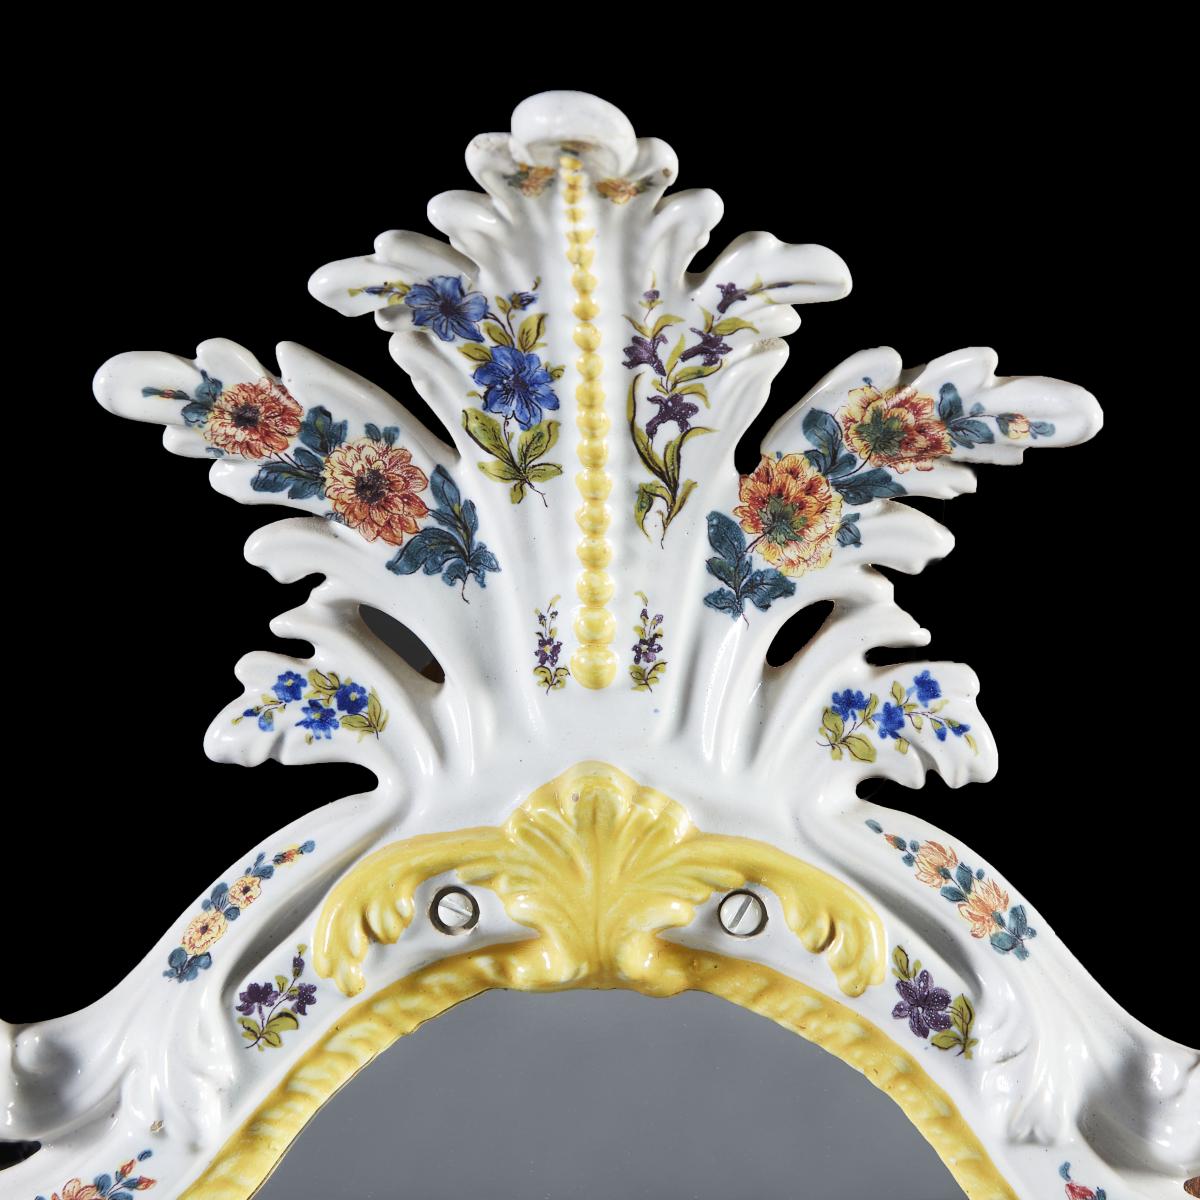 19th Century Italian Faience Mirror